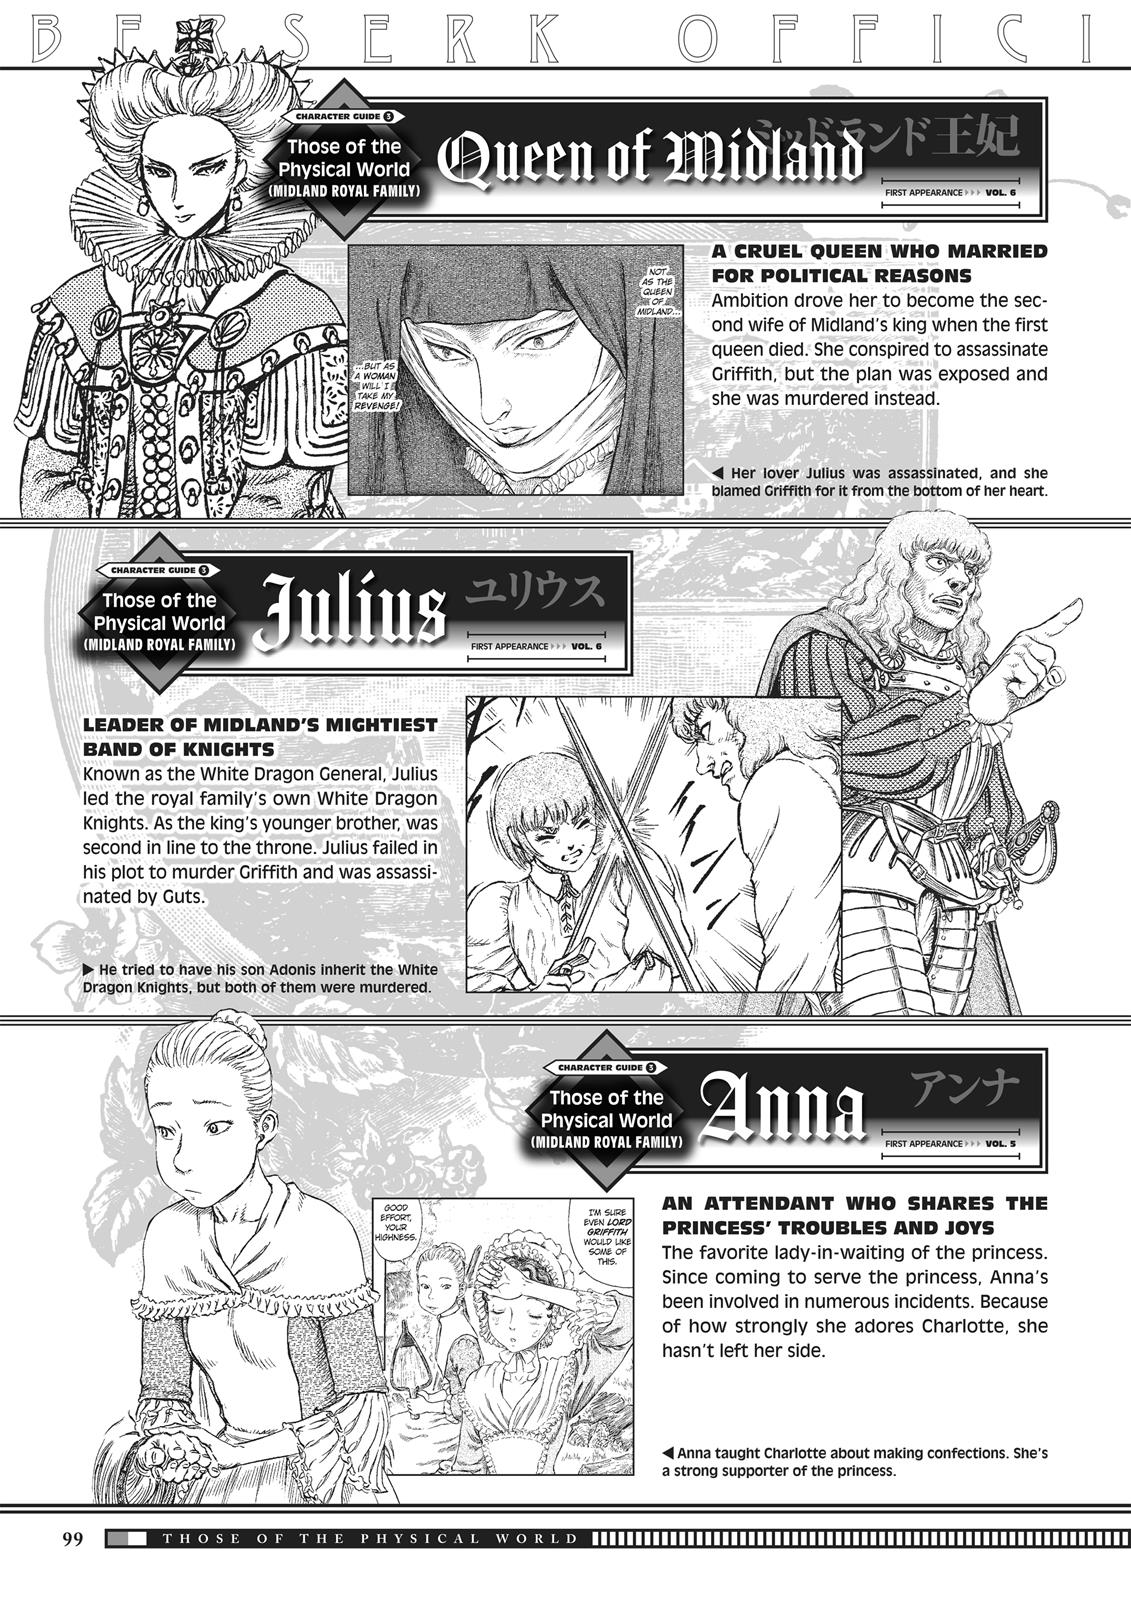 Berserk Manga Chapter 350.5 image 097